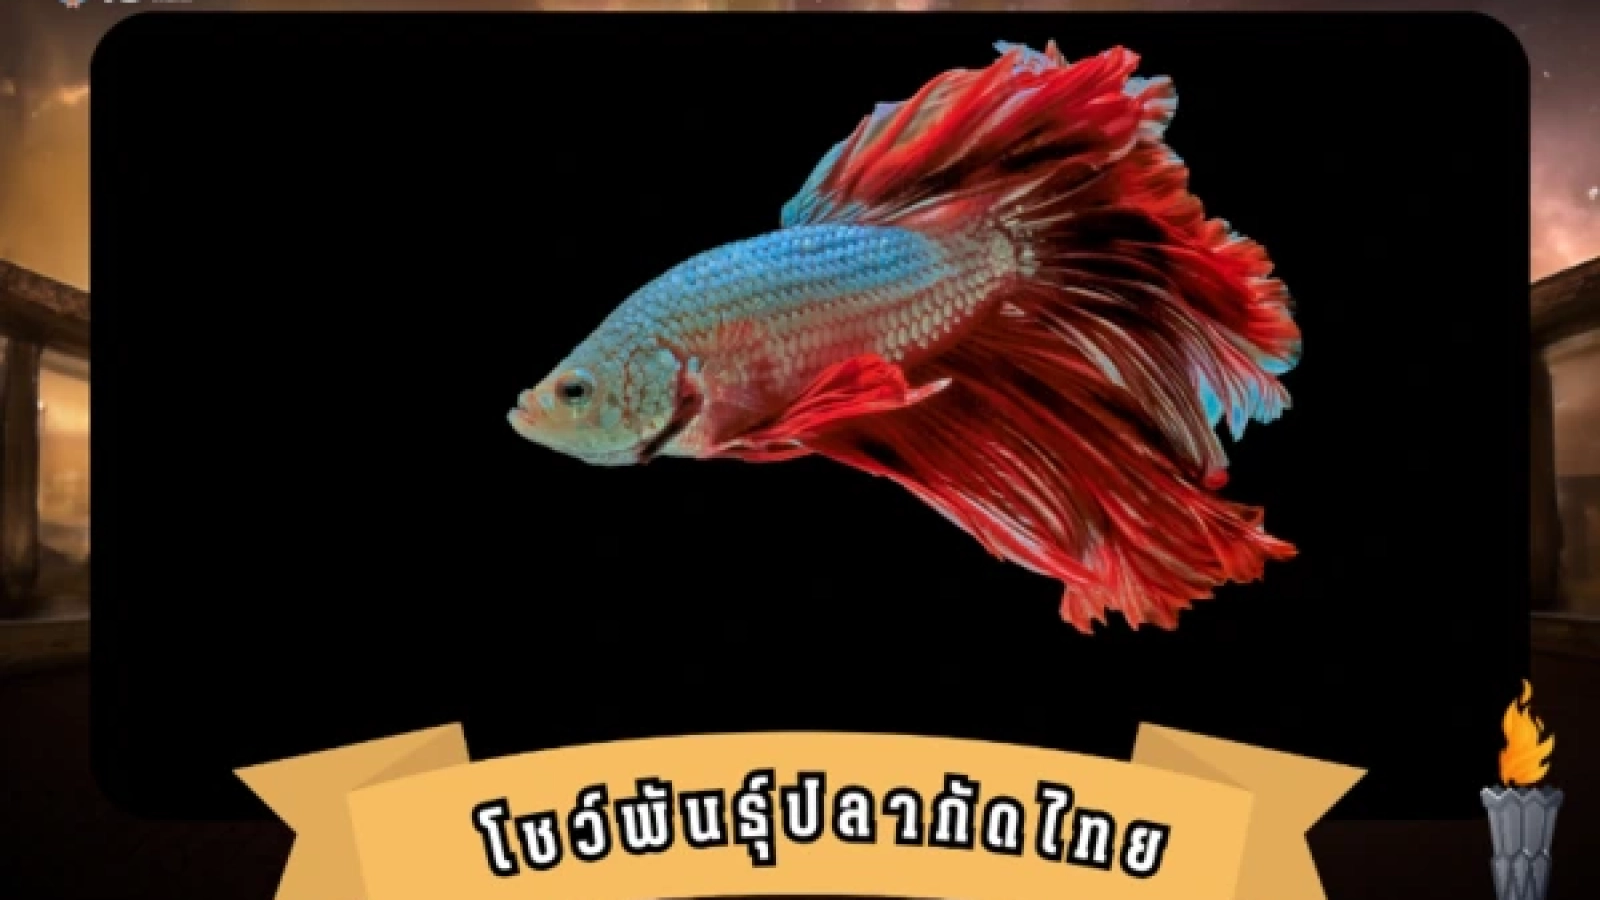 โชว์พันธุ์ปลากัดไทย